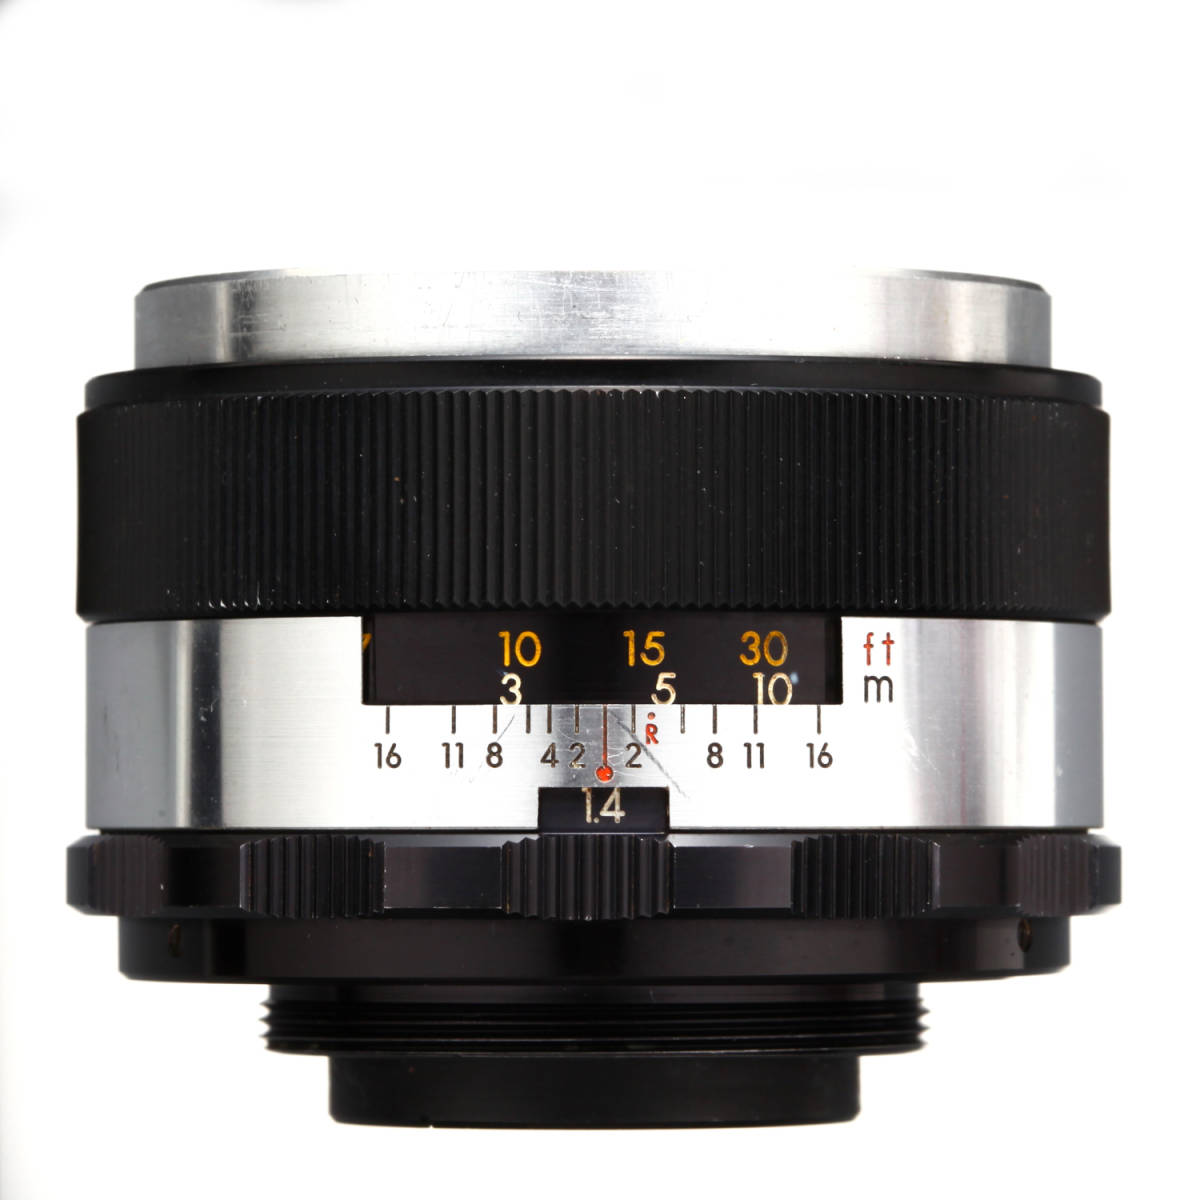 【大口径標準レンズ】AUTO YASHINON-DX 50mm F1.4【M42マウント】_画像2